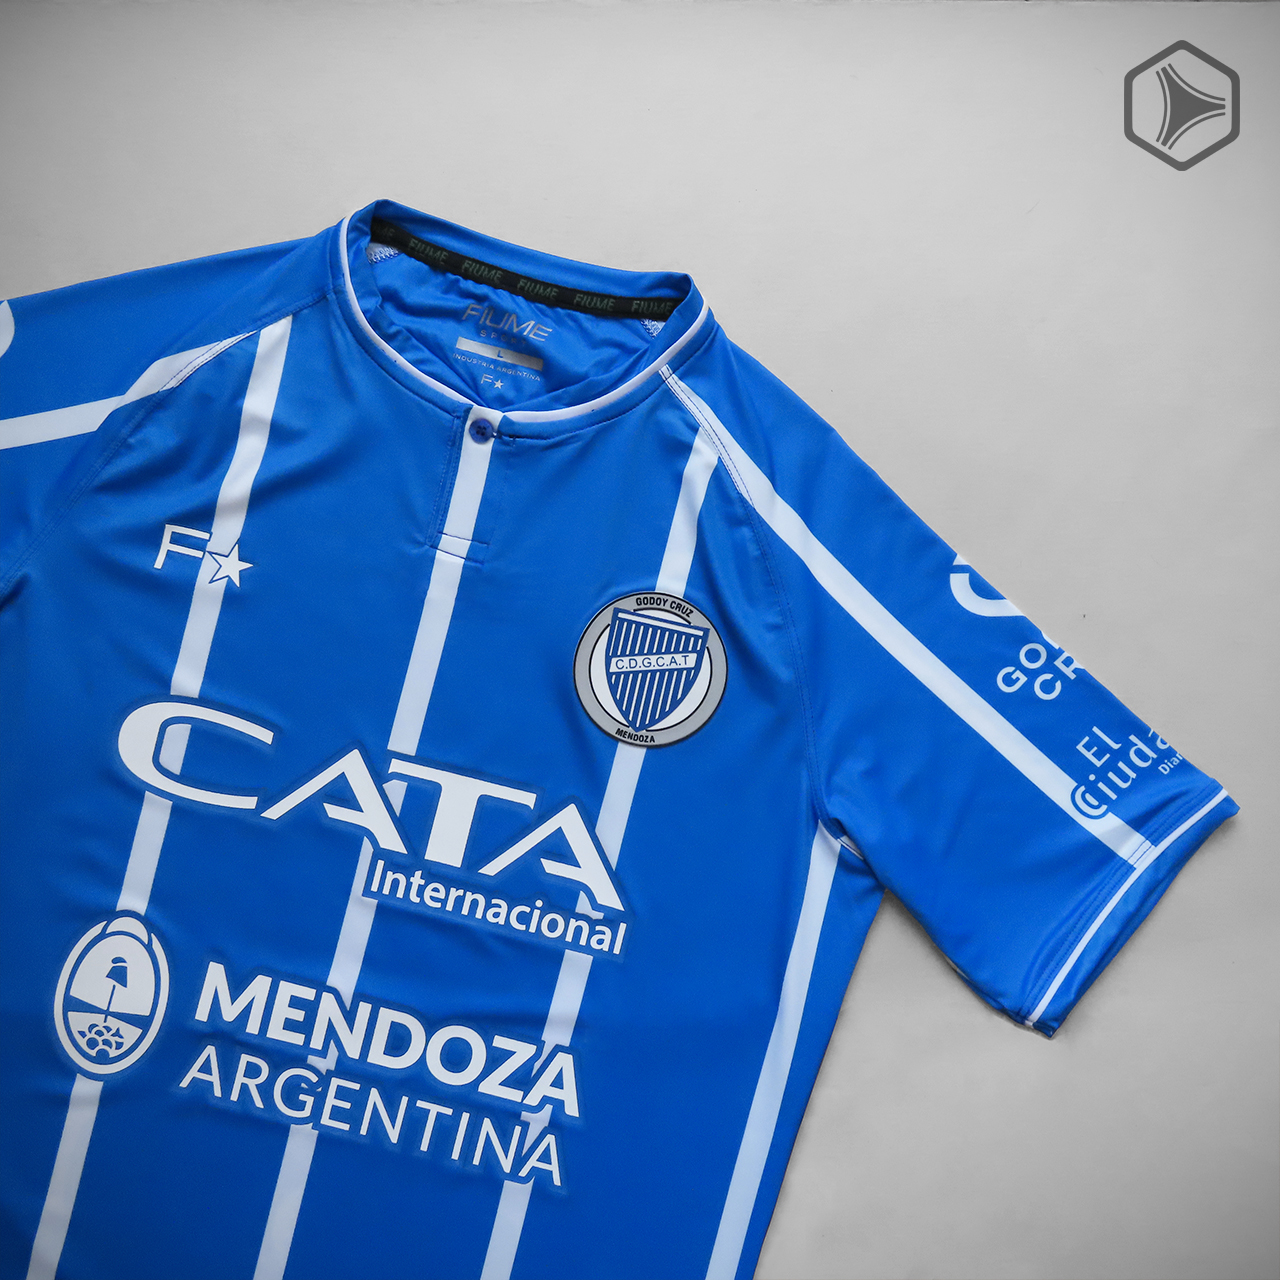 Camisetas Fiume Sport de Godoy Cruz 2021 Titular